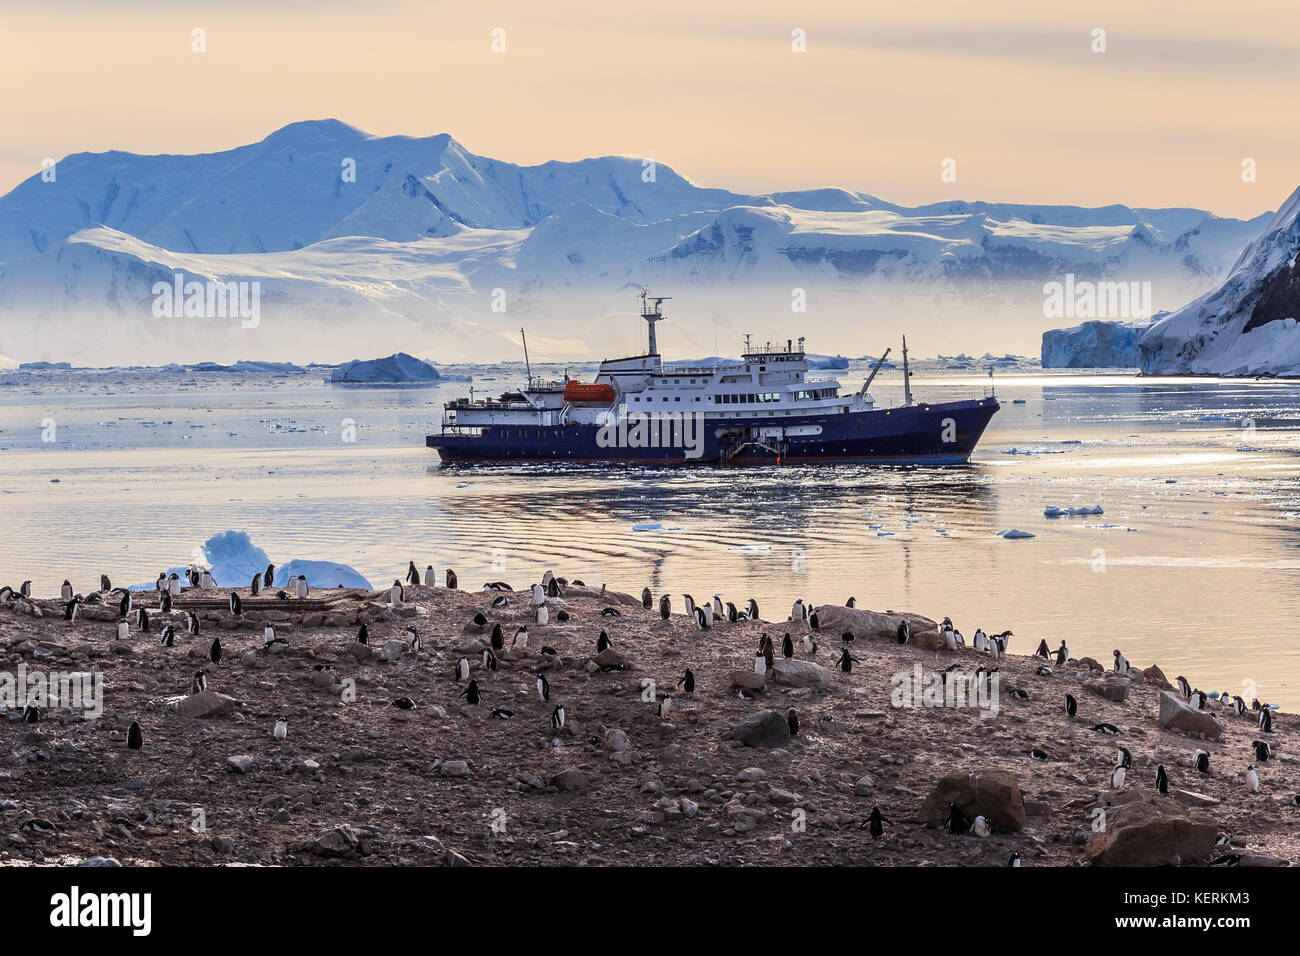 Bateau de croisière antarctique dans le lagon entre les icebergs et manchots colonie sur la côte rocheuse de la baie de Neco, Antarctique Banque D'Images